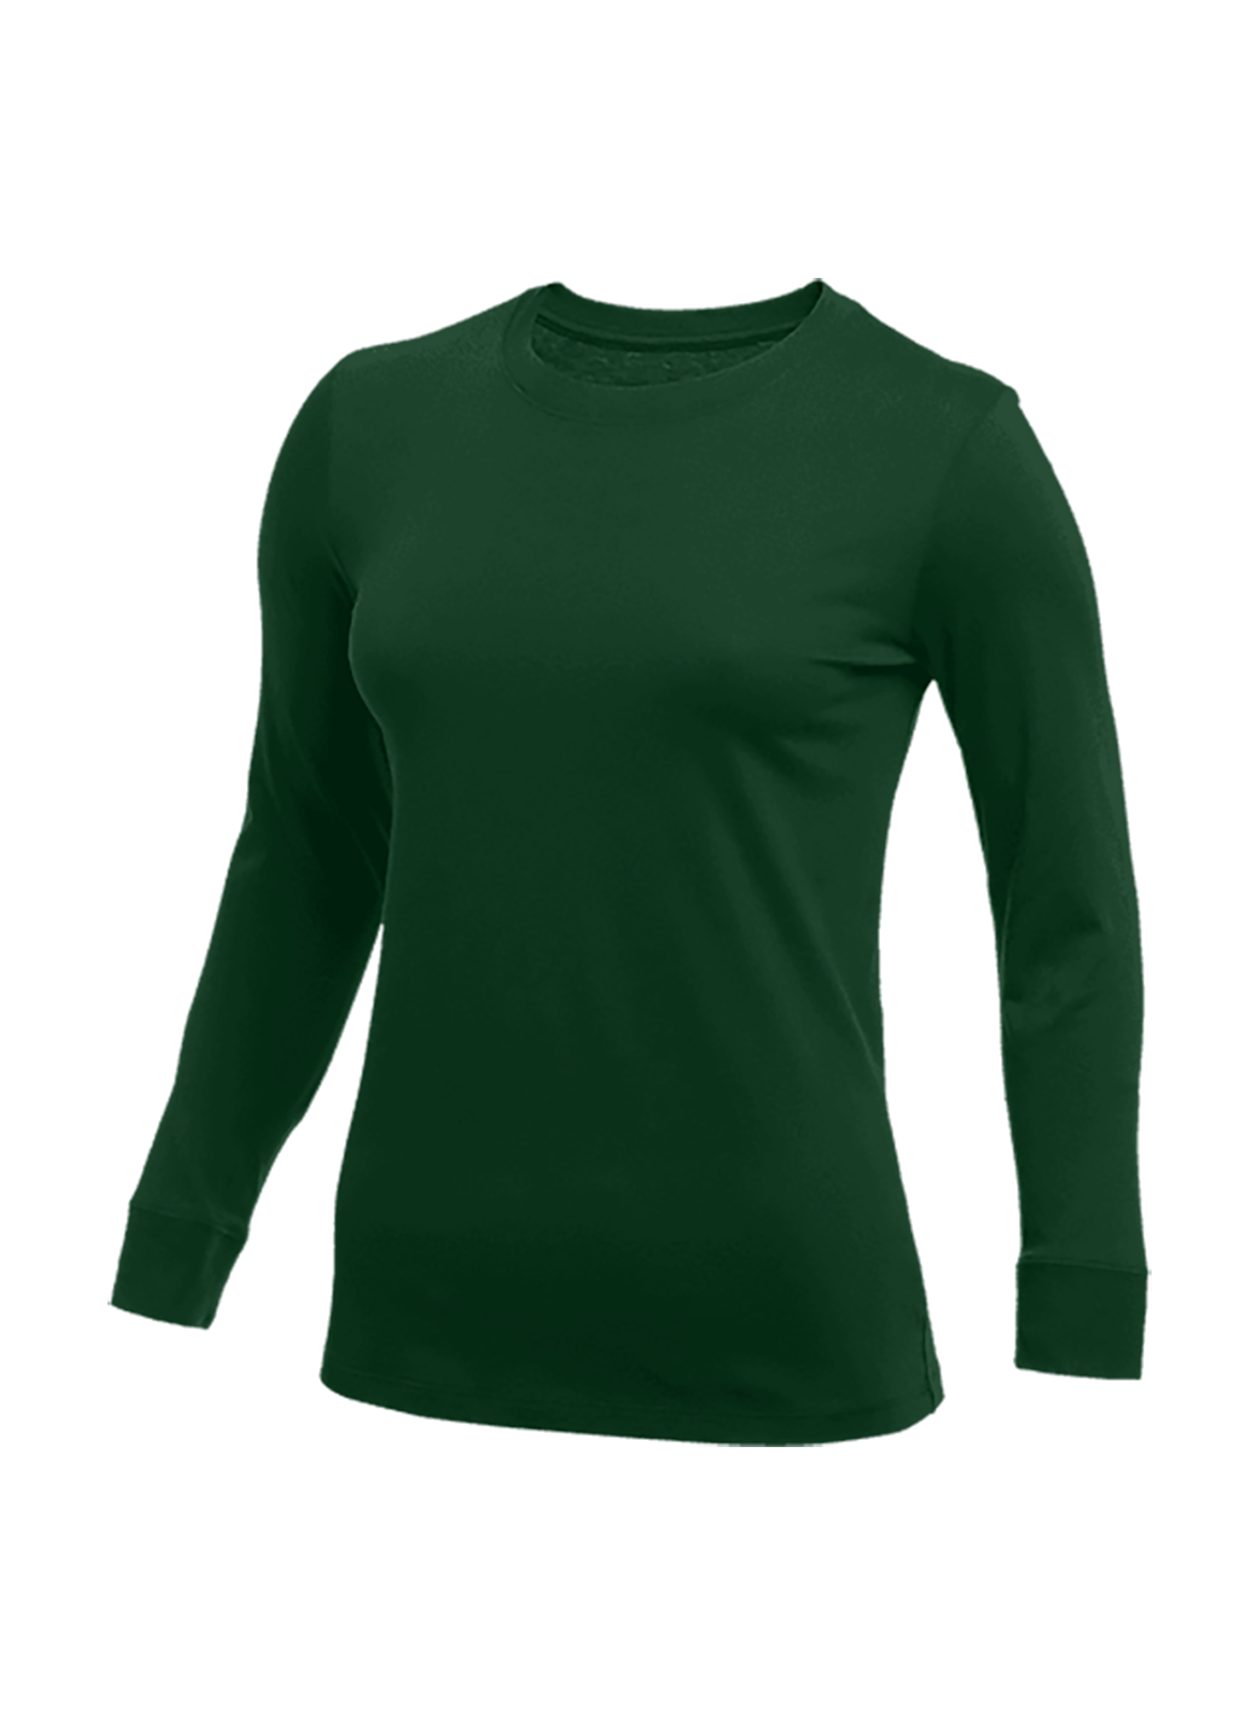 Nike Women's Noble Green Long-Sleeve T-Shirt